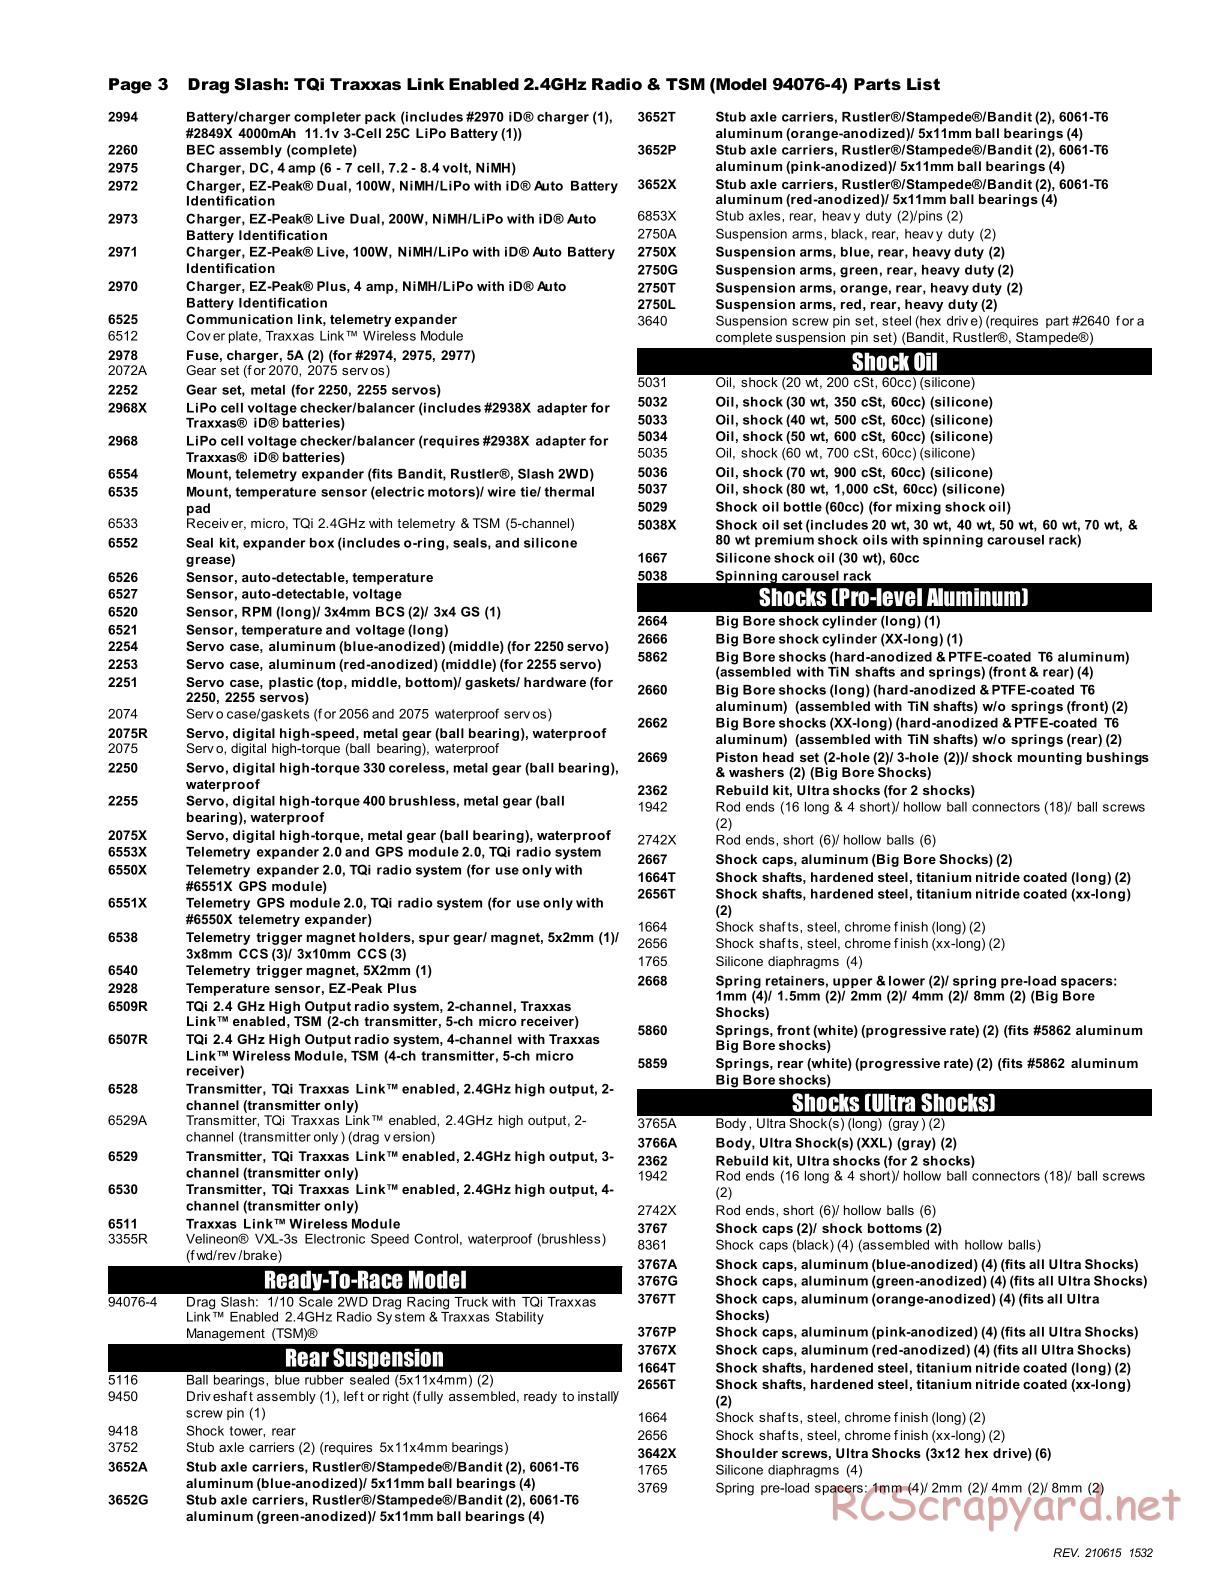 Traxxas - Drag Slash - Parts List - Page 3